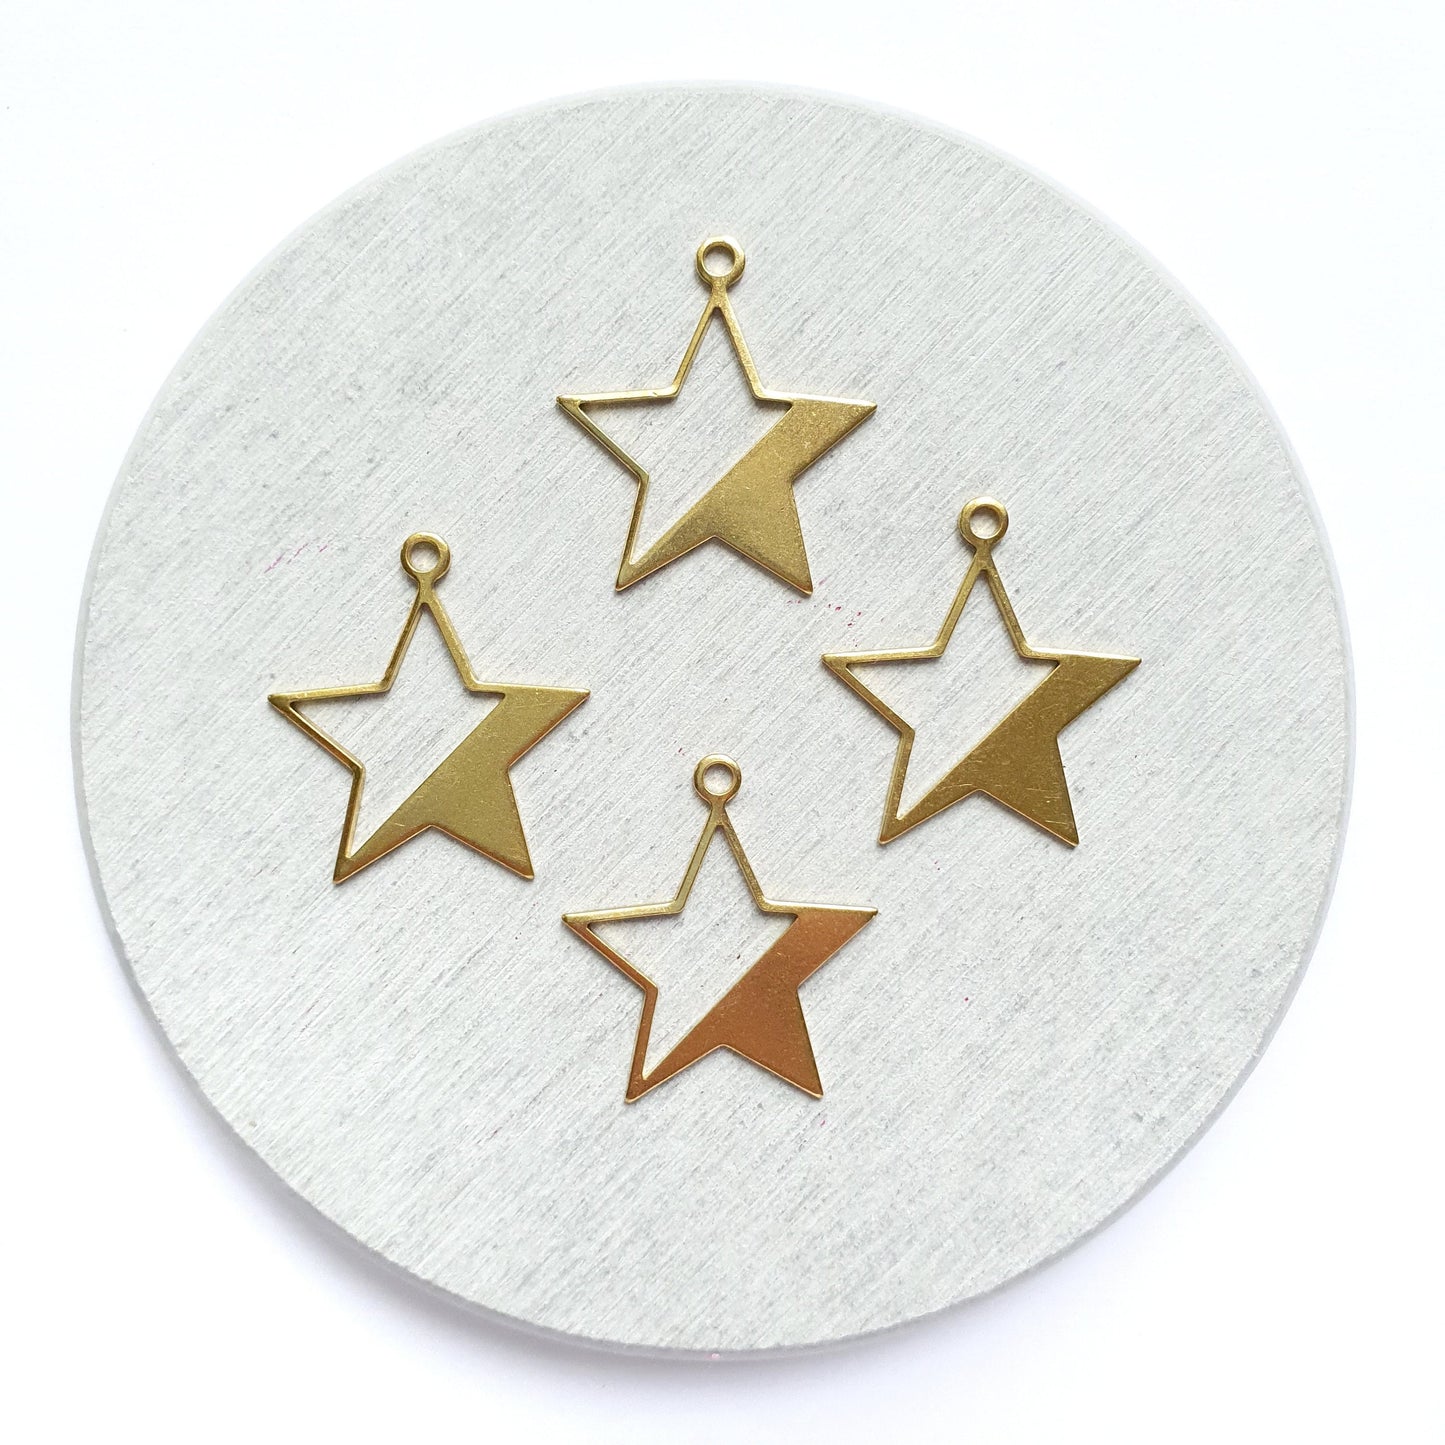 12 pcs Star Earrings components Earrings findings DIY jewelry Raw brass blanks charms Pendants - Luxy Kraft